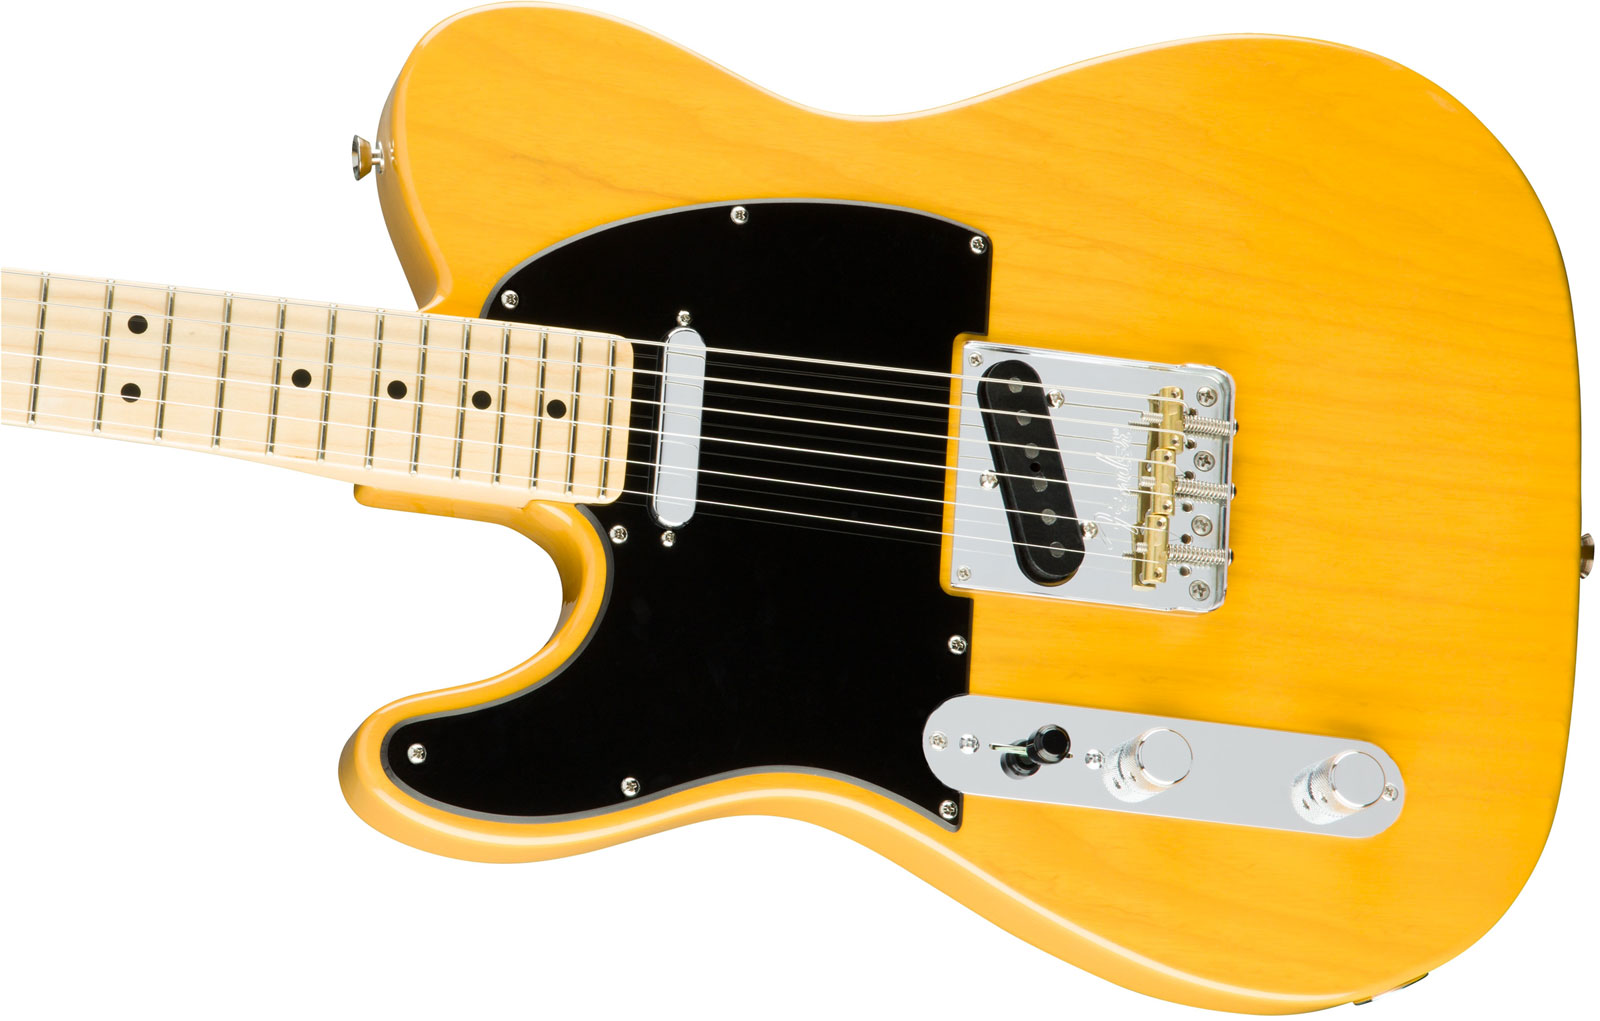 Fender Tele American Professional Lh Usa Gaucher 2s Mn - Butterscotch Blonde - Linkshandige elektrische gitaar - Variation 3